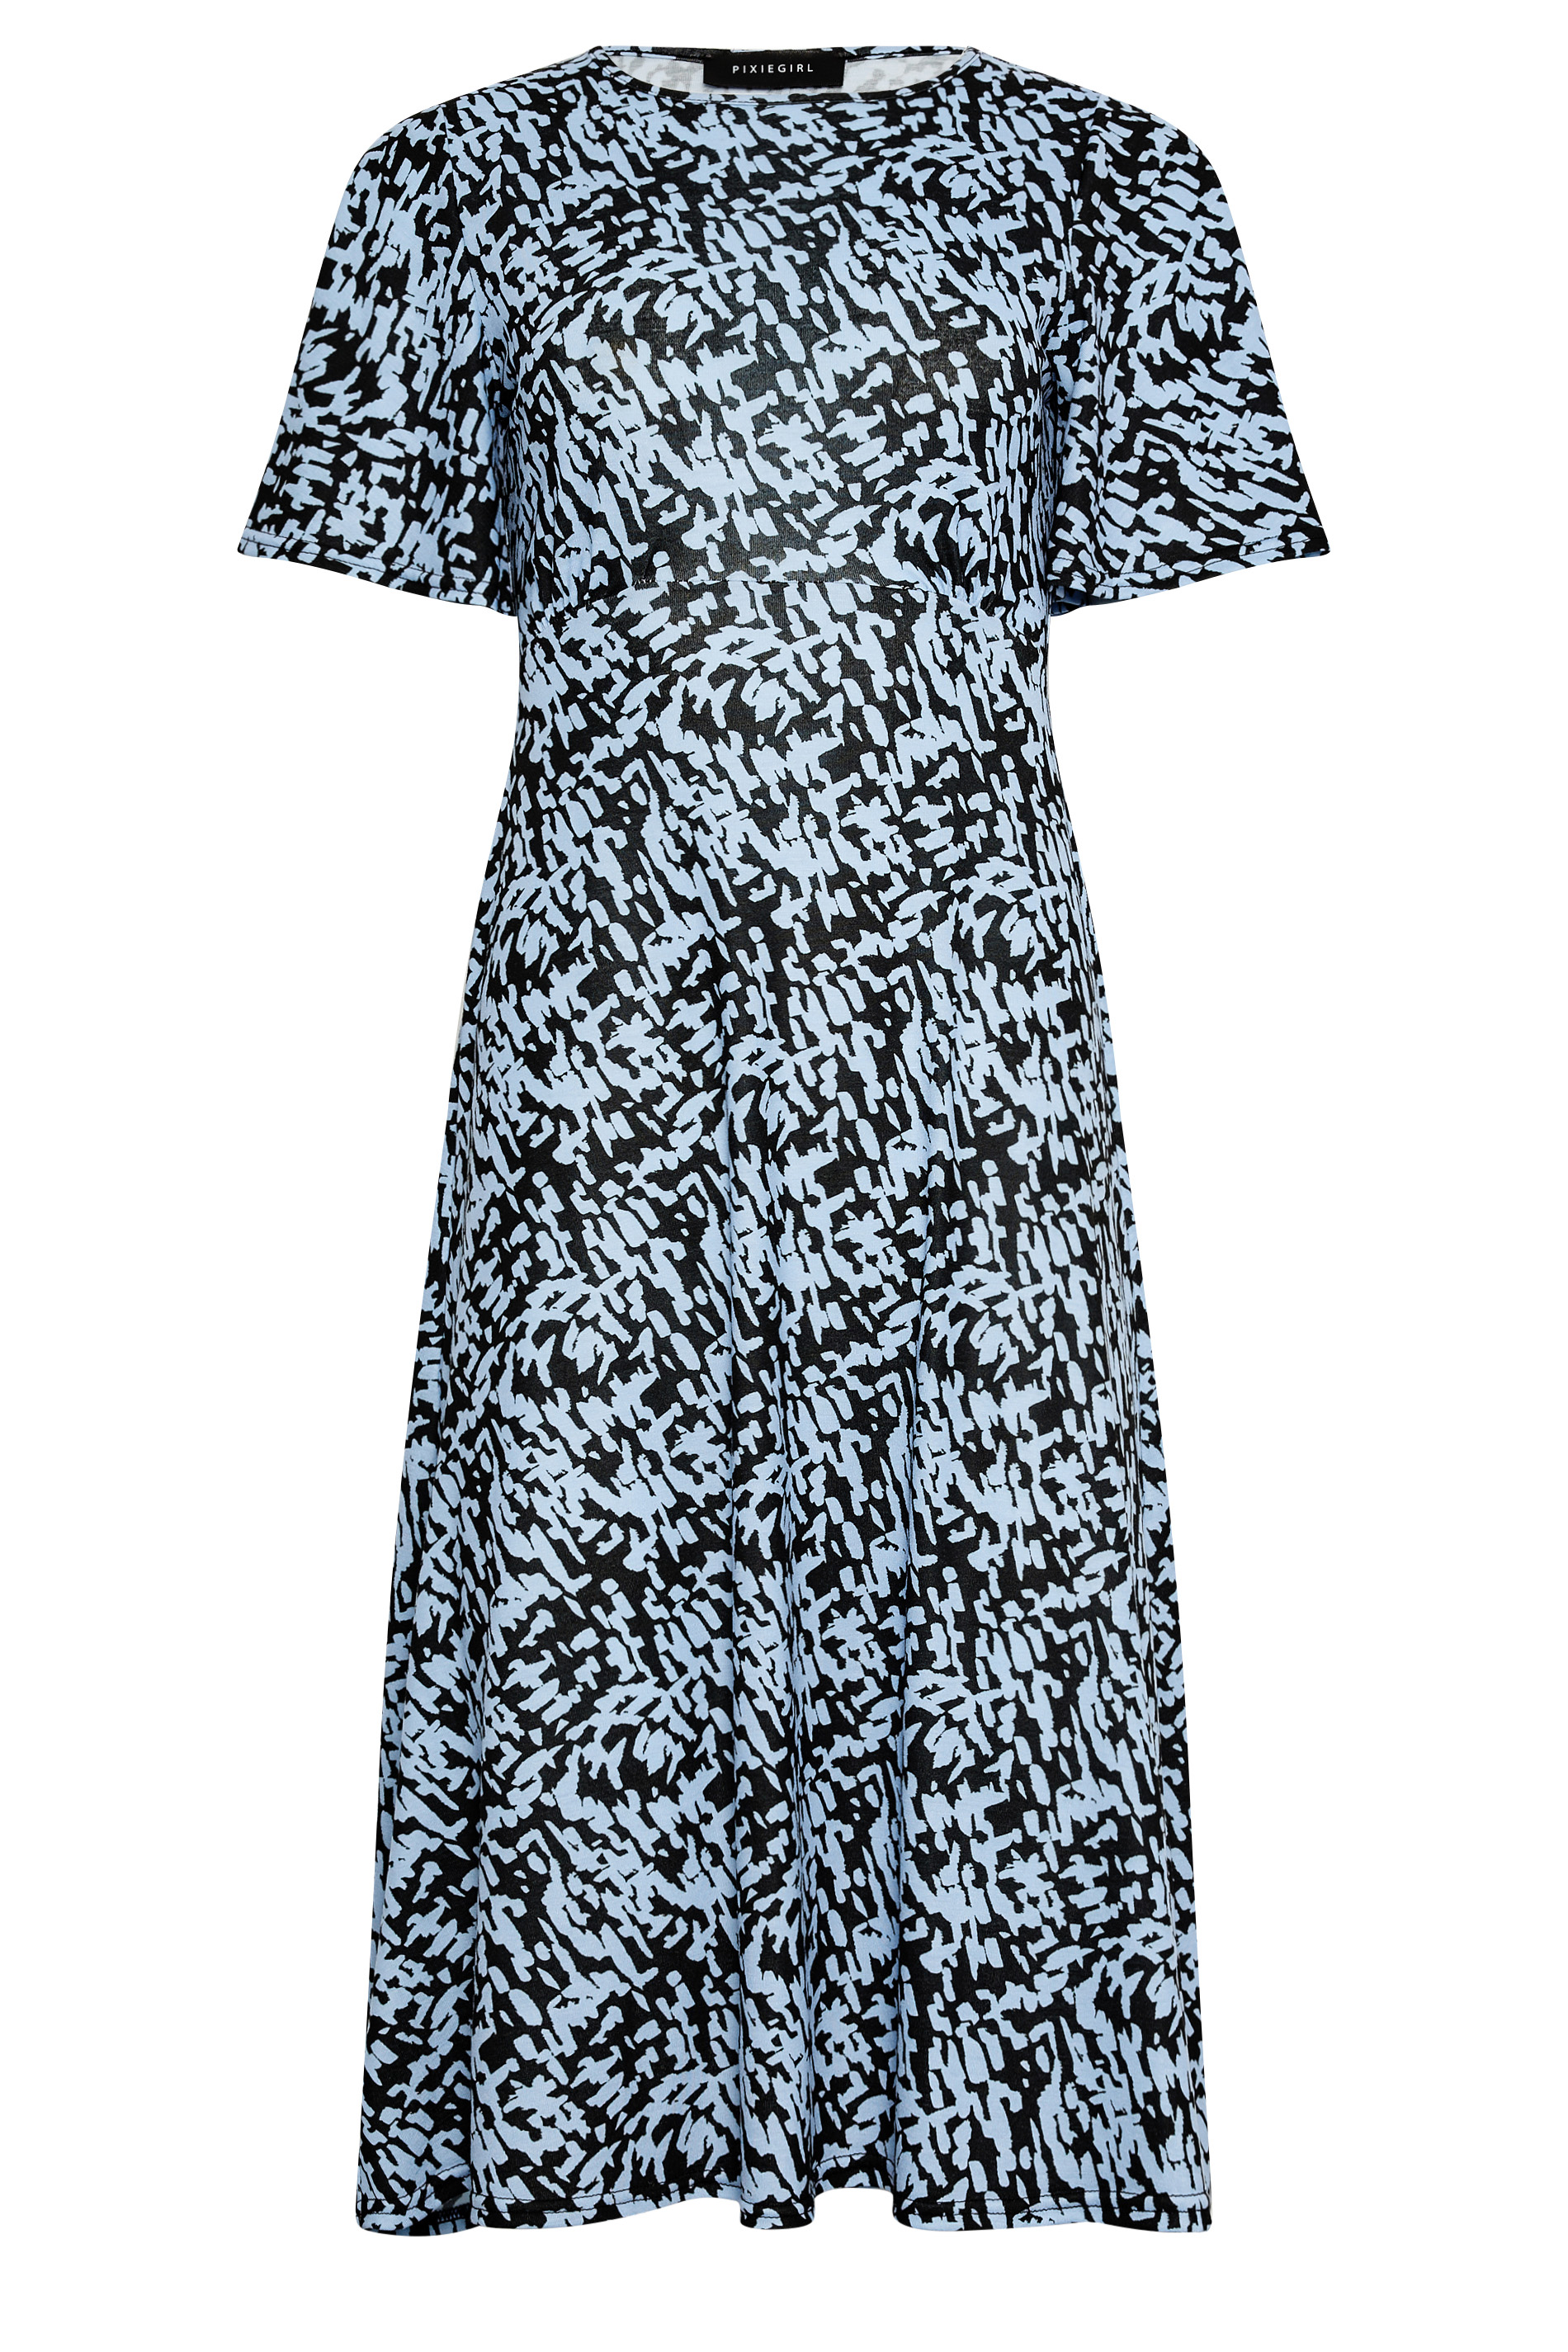 PixieGirl Blue Animal Markings Midi Dress | PixieGirl